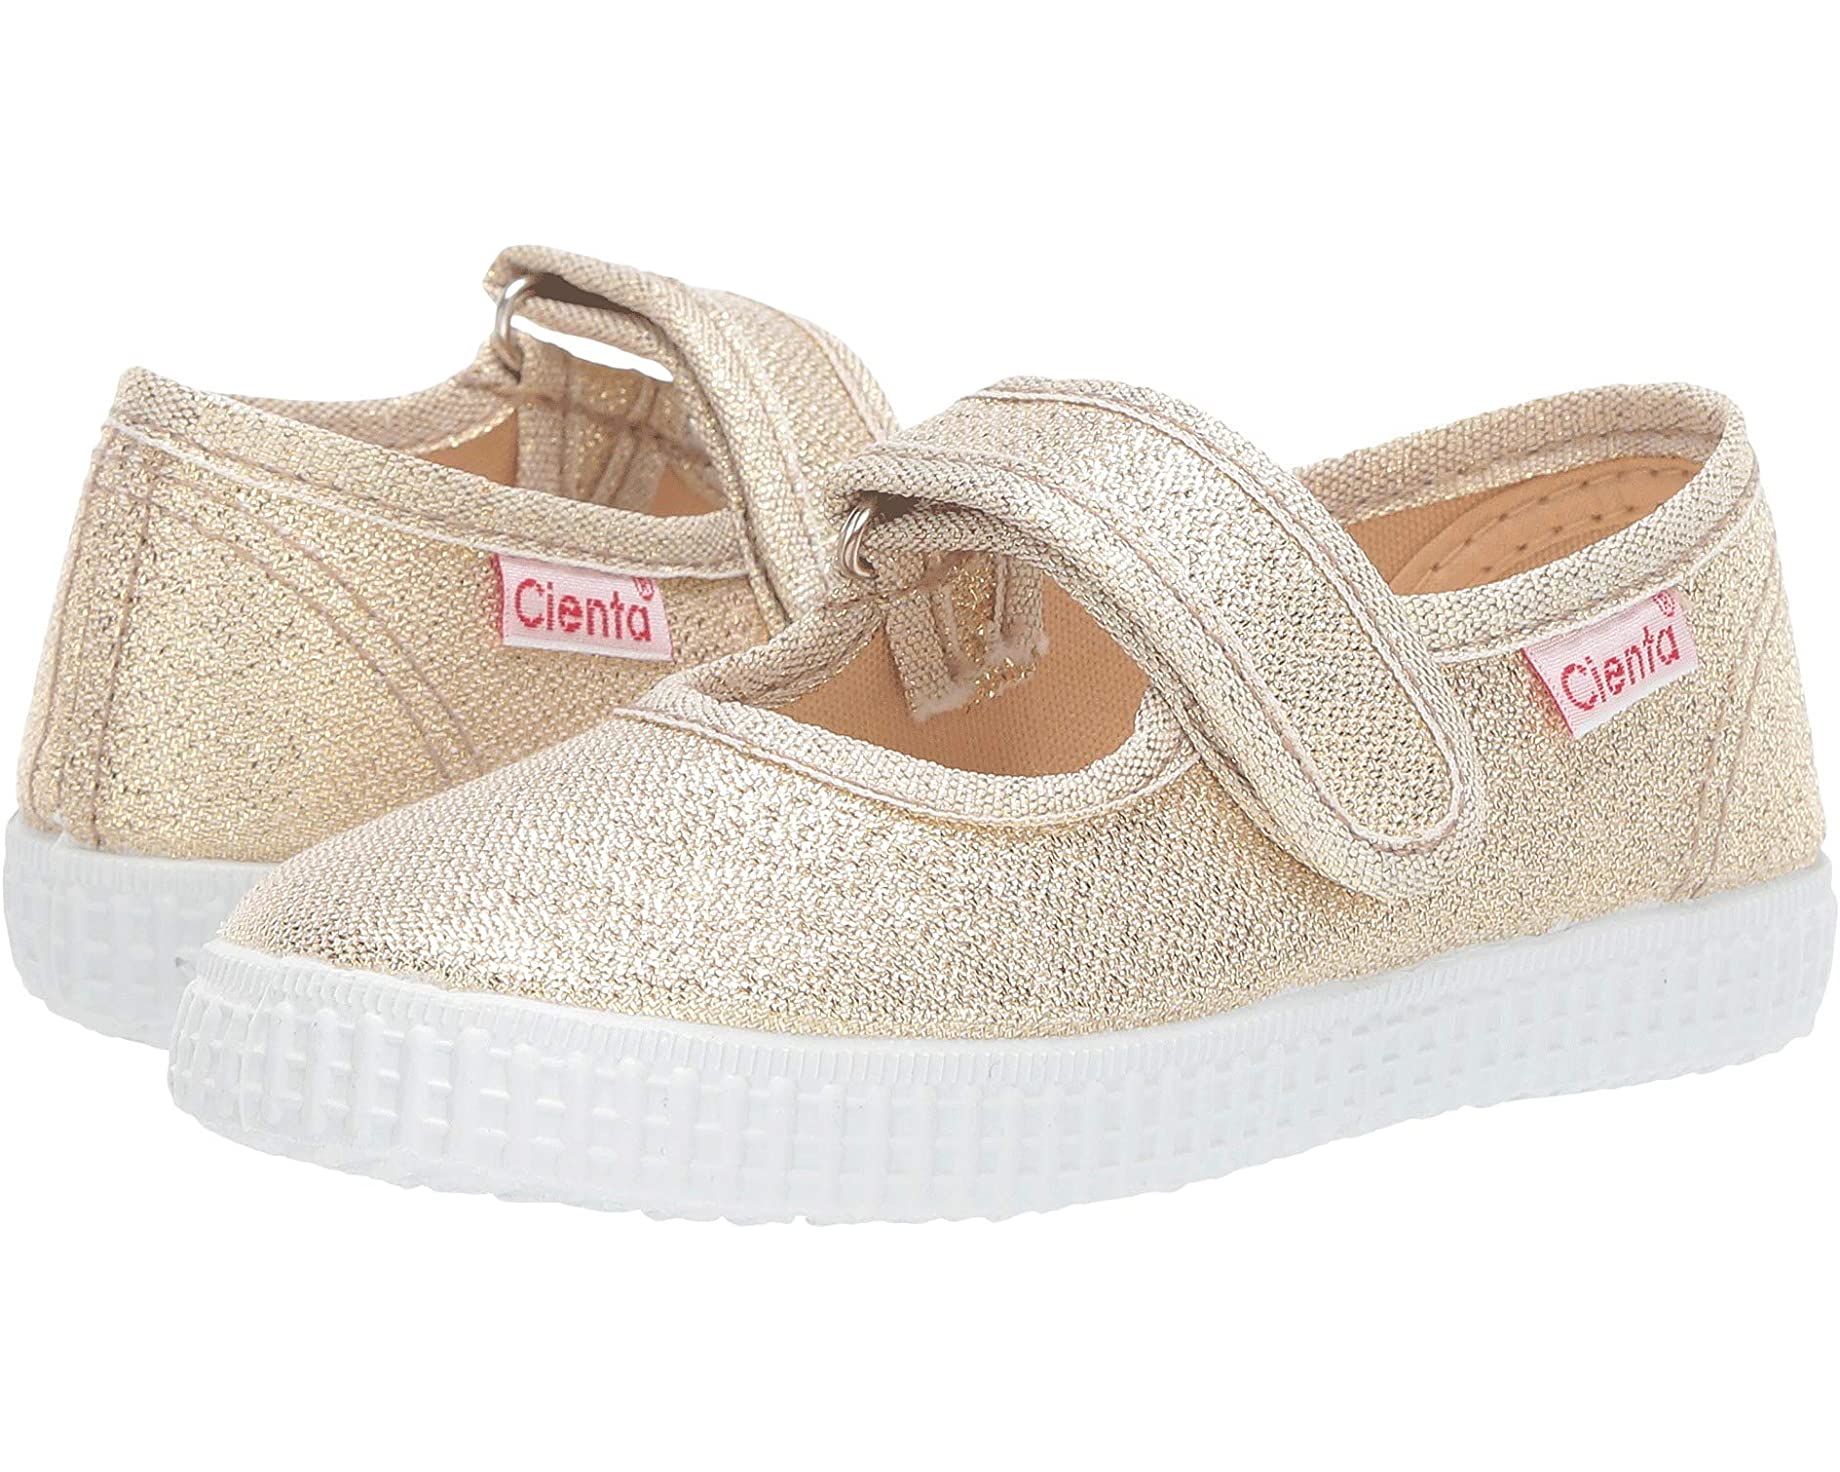 Cienta Shoes Baby SNEAKERS for Girls White Tennis Girl Baby Girl Slip On |  eBay